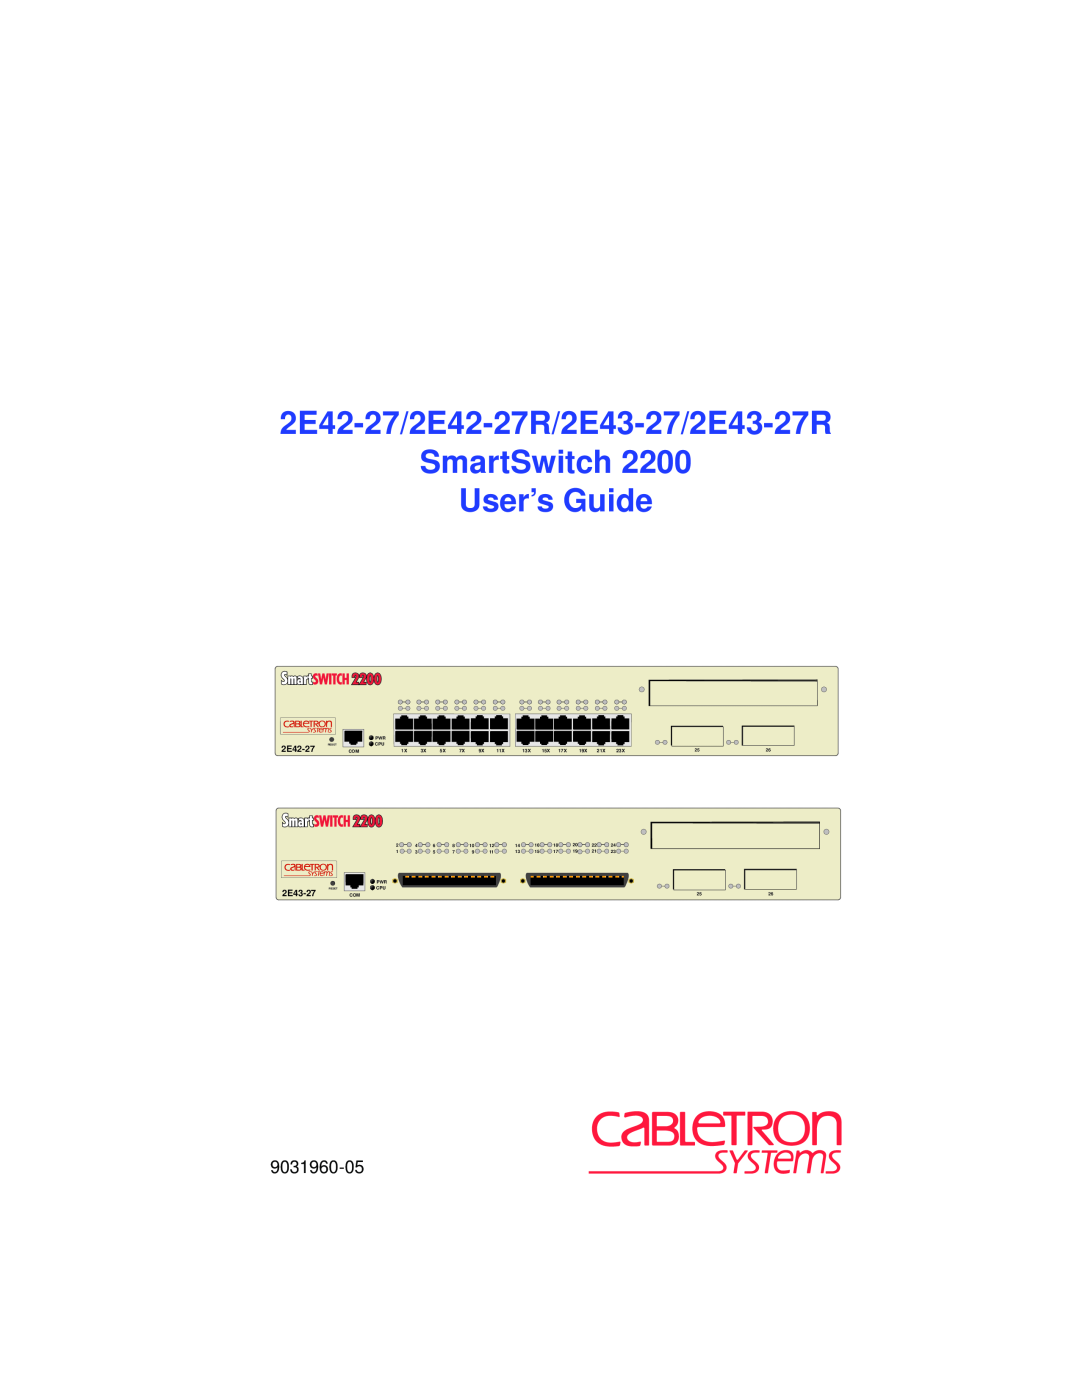 Cabletron Systems manual 2E42-27/2E42-27R/2E43-27/2E43-27R SmartSwitch User’s Guide, 9031960-05 